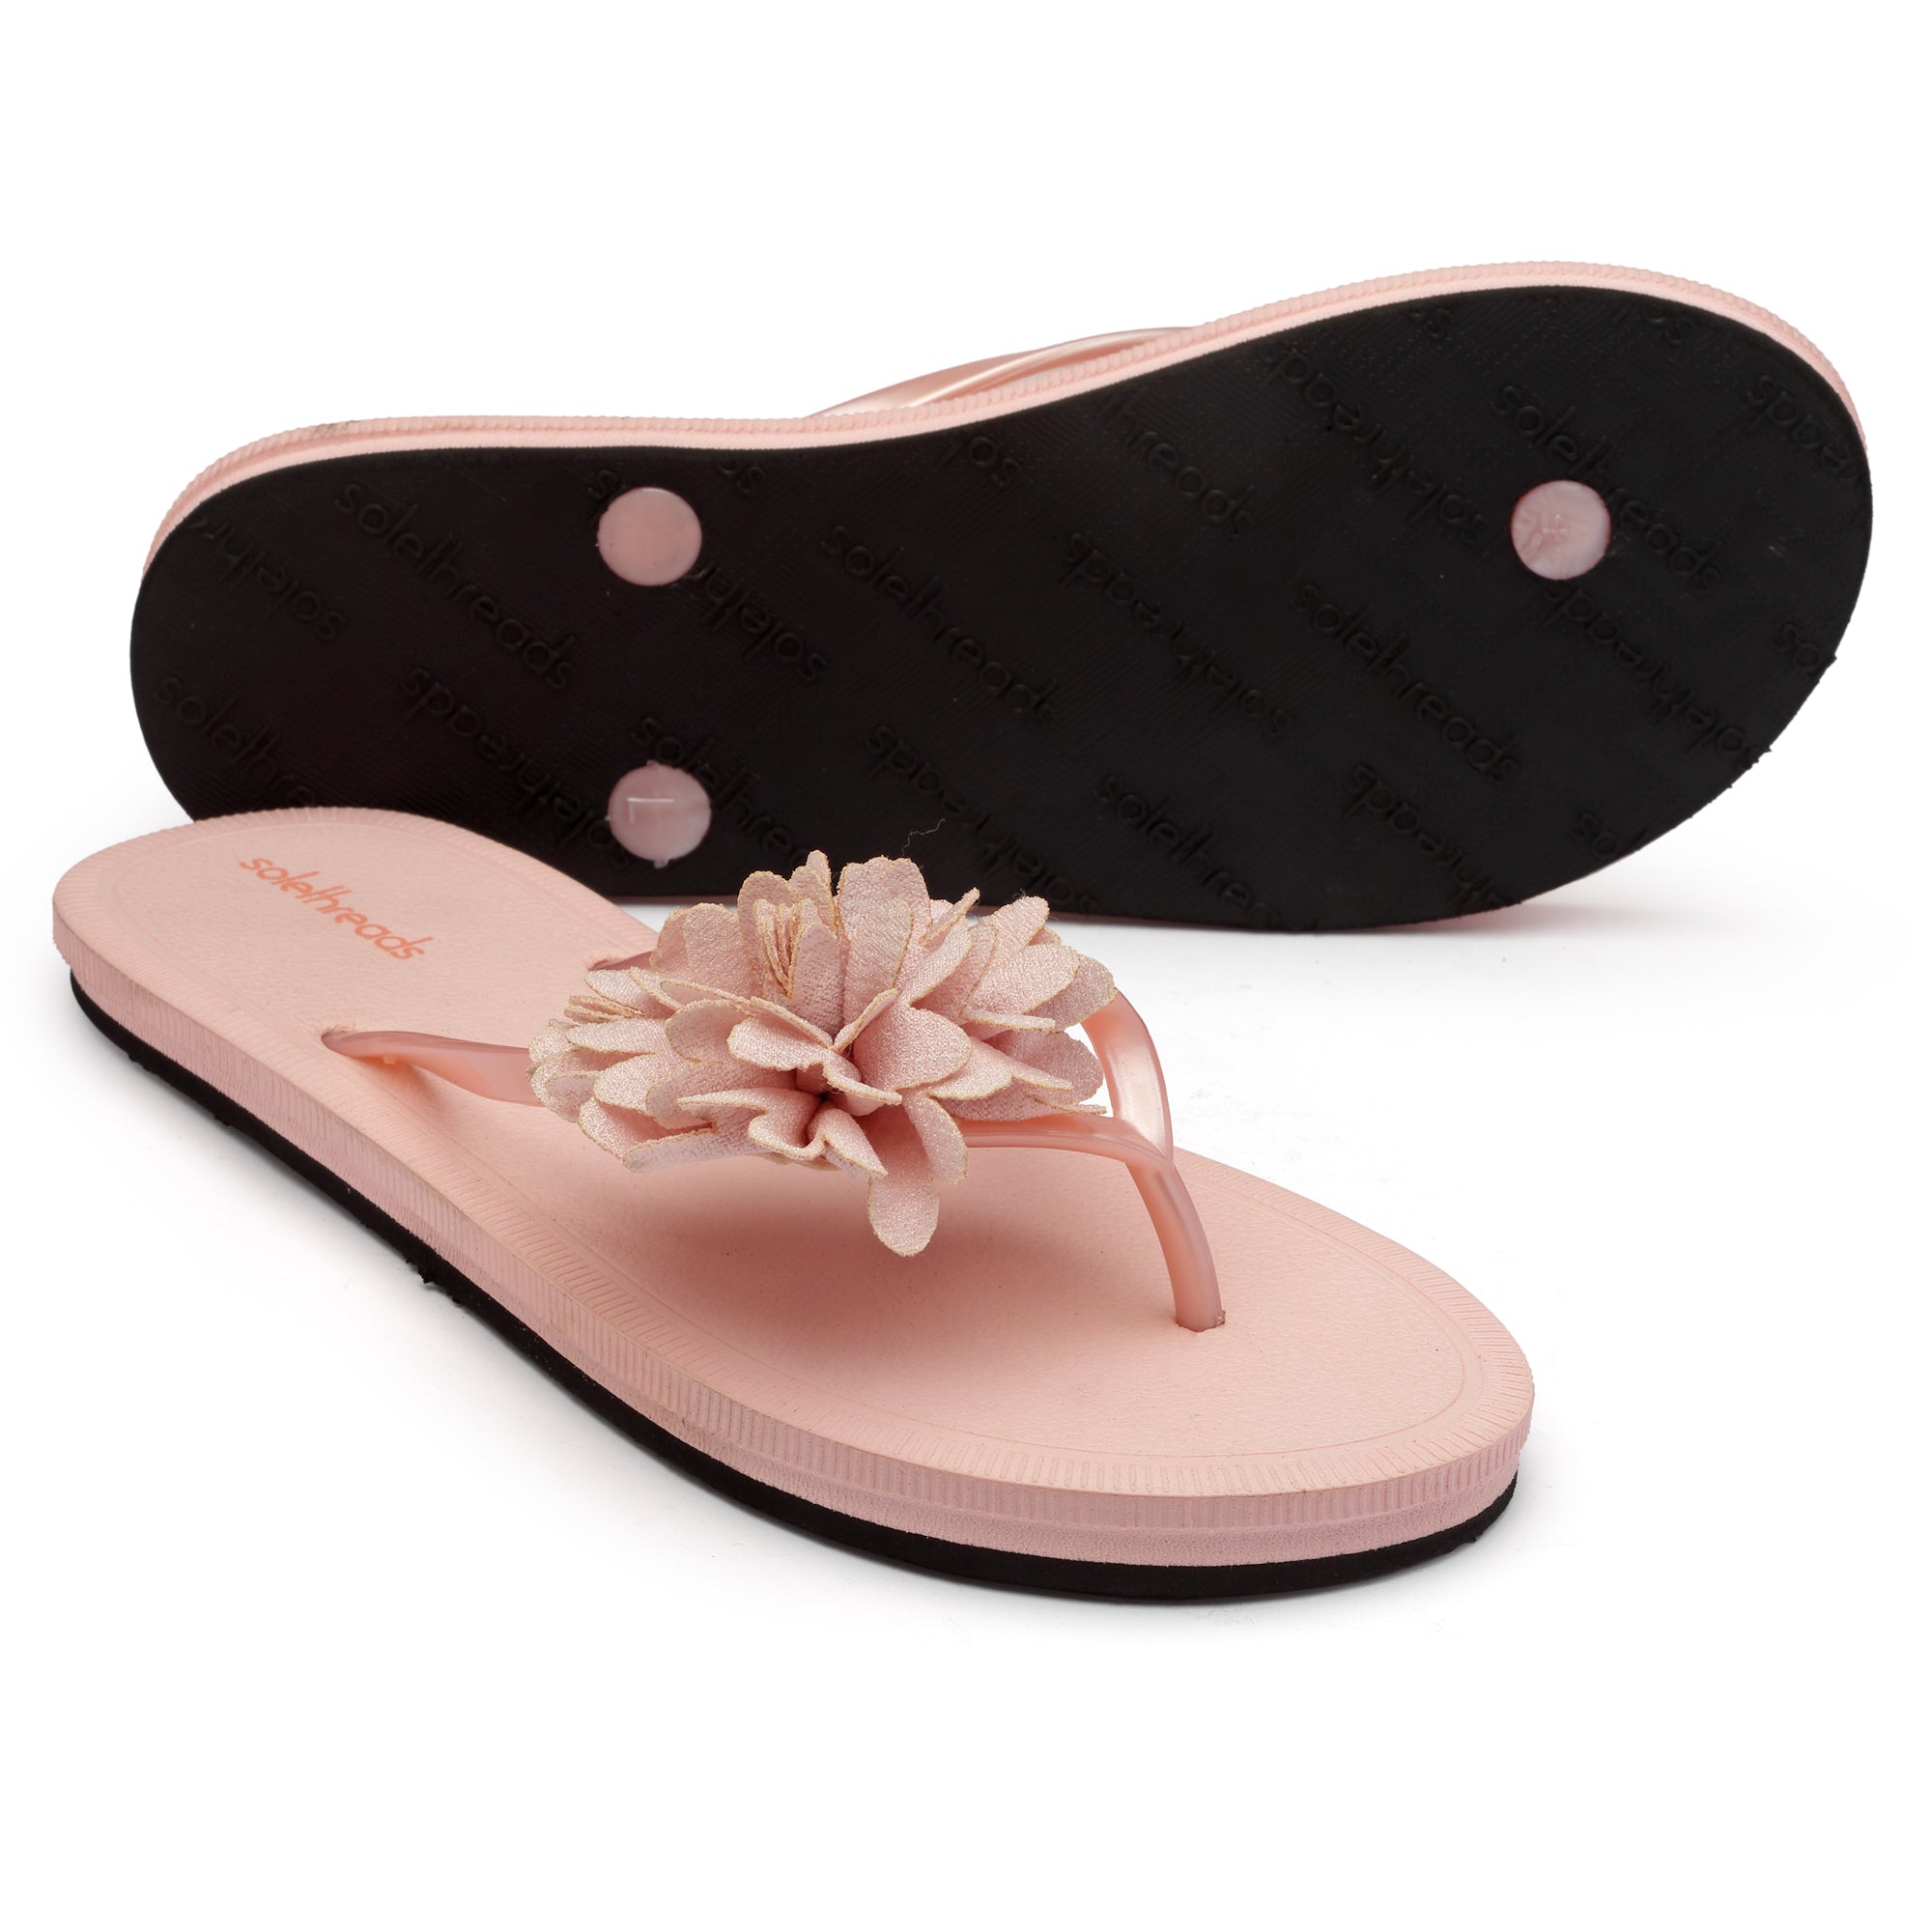 yoga mat sandals: Women's Shoes